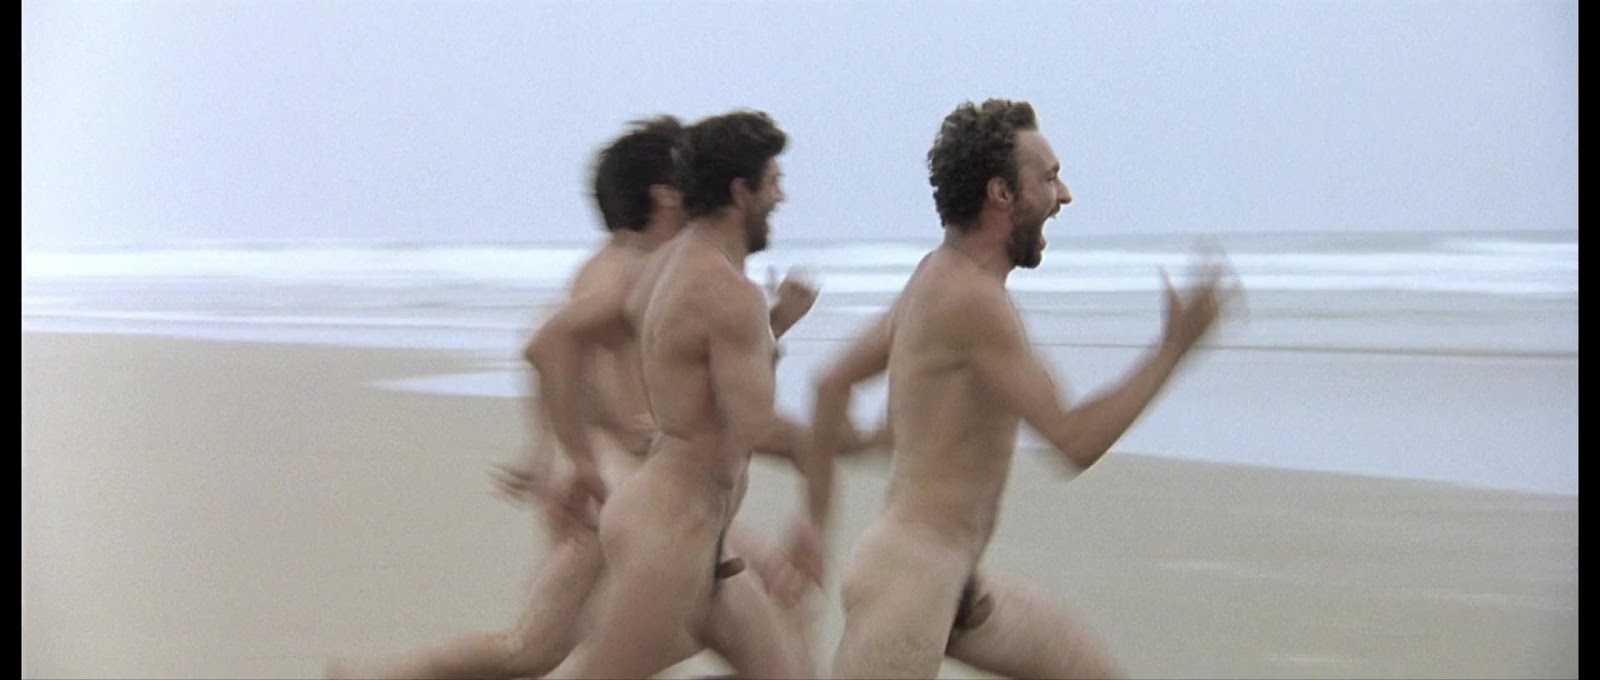 мальчики по пляжу бегают голыми фото 1